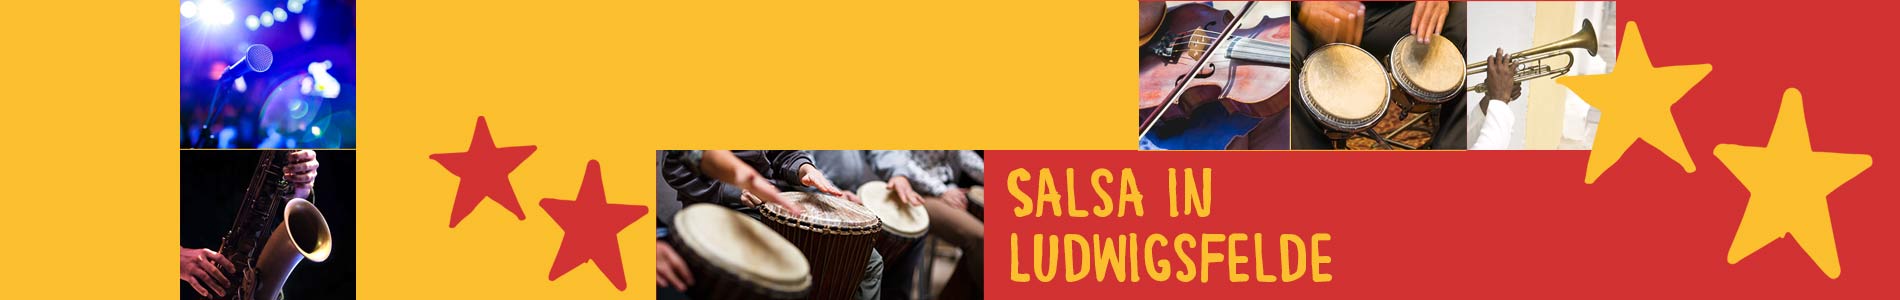 Salsa in Ludwigsfelde – Salsa lernen und tanzen, Tanzkurse, Partys, Veranstaltungen